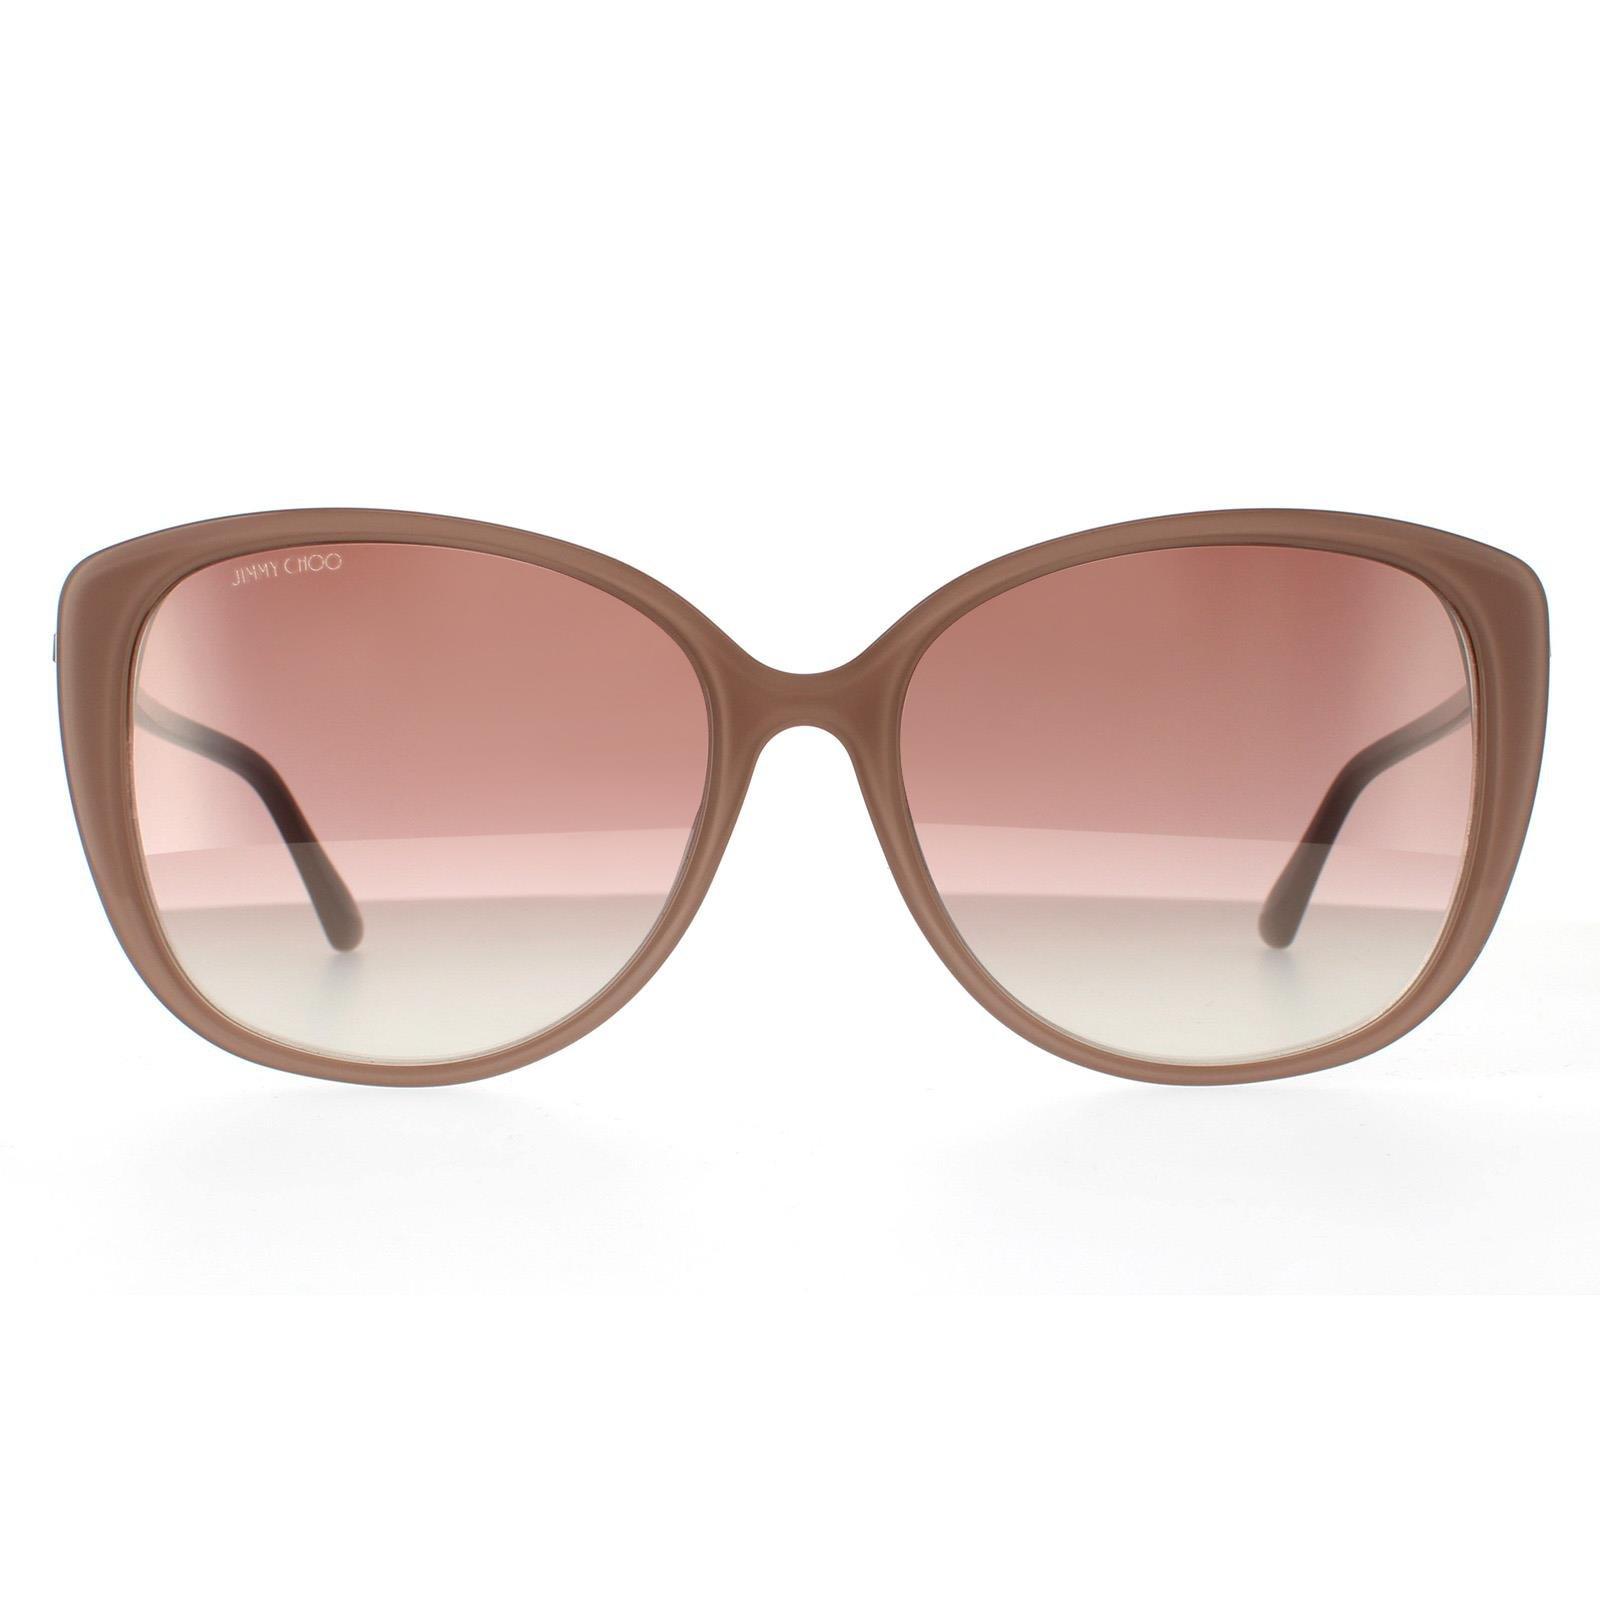 Коричневые зеркальные солнцезащитные очки телесного цвета с блестками «кошачий глаз» телесного цвета и градиентом Jimmy Choo, бежевый